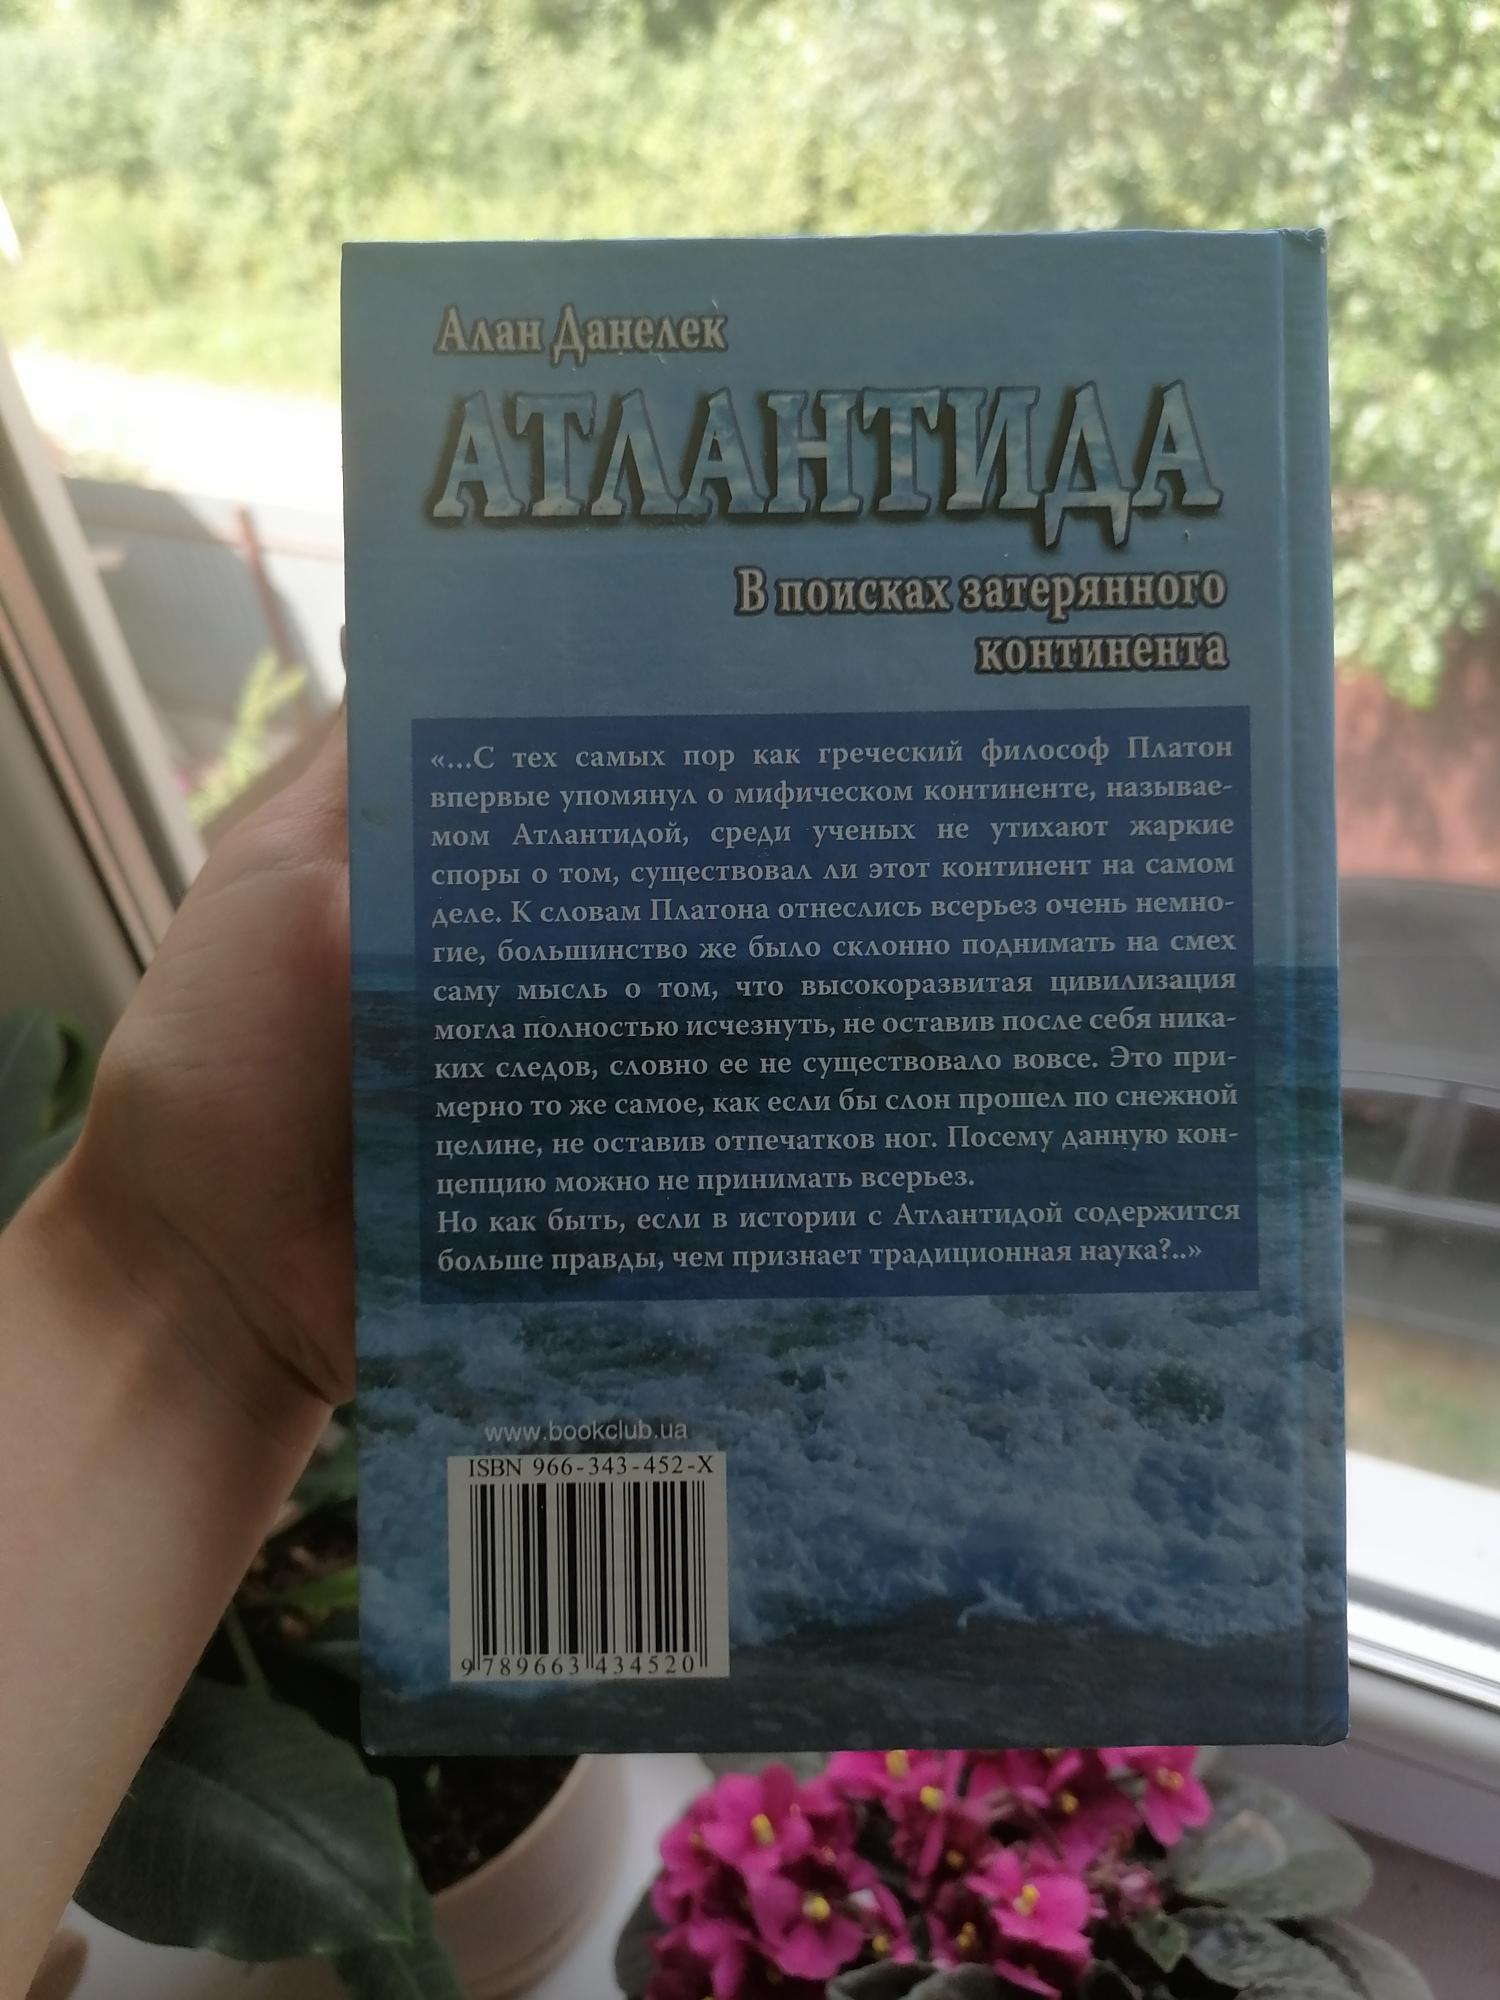 Книга Атлантида в поисках затерянного континента в Москве 89175627493 купить 2